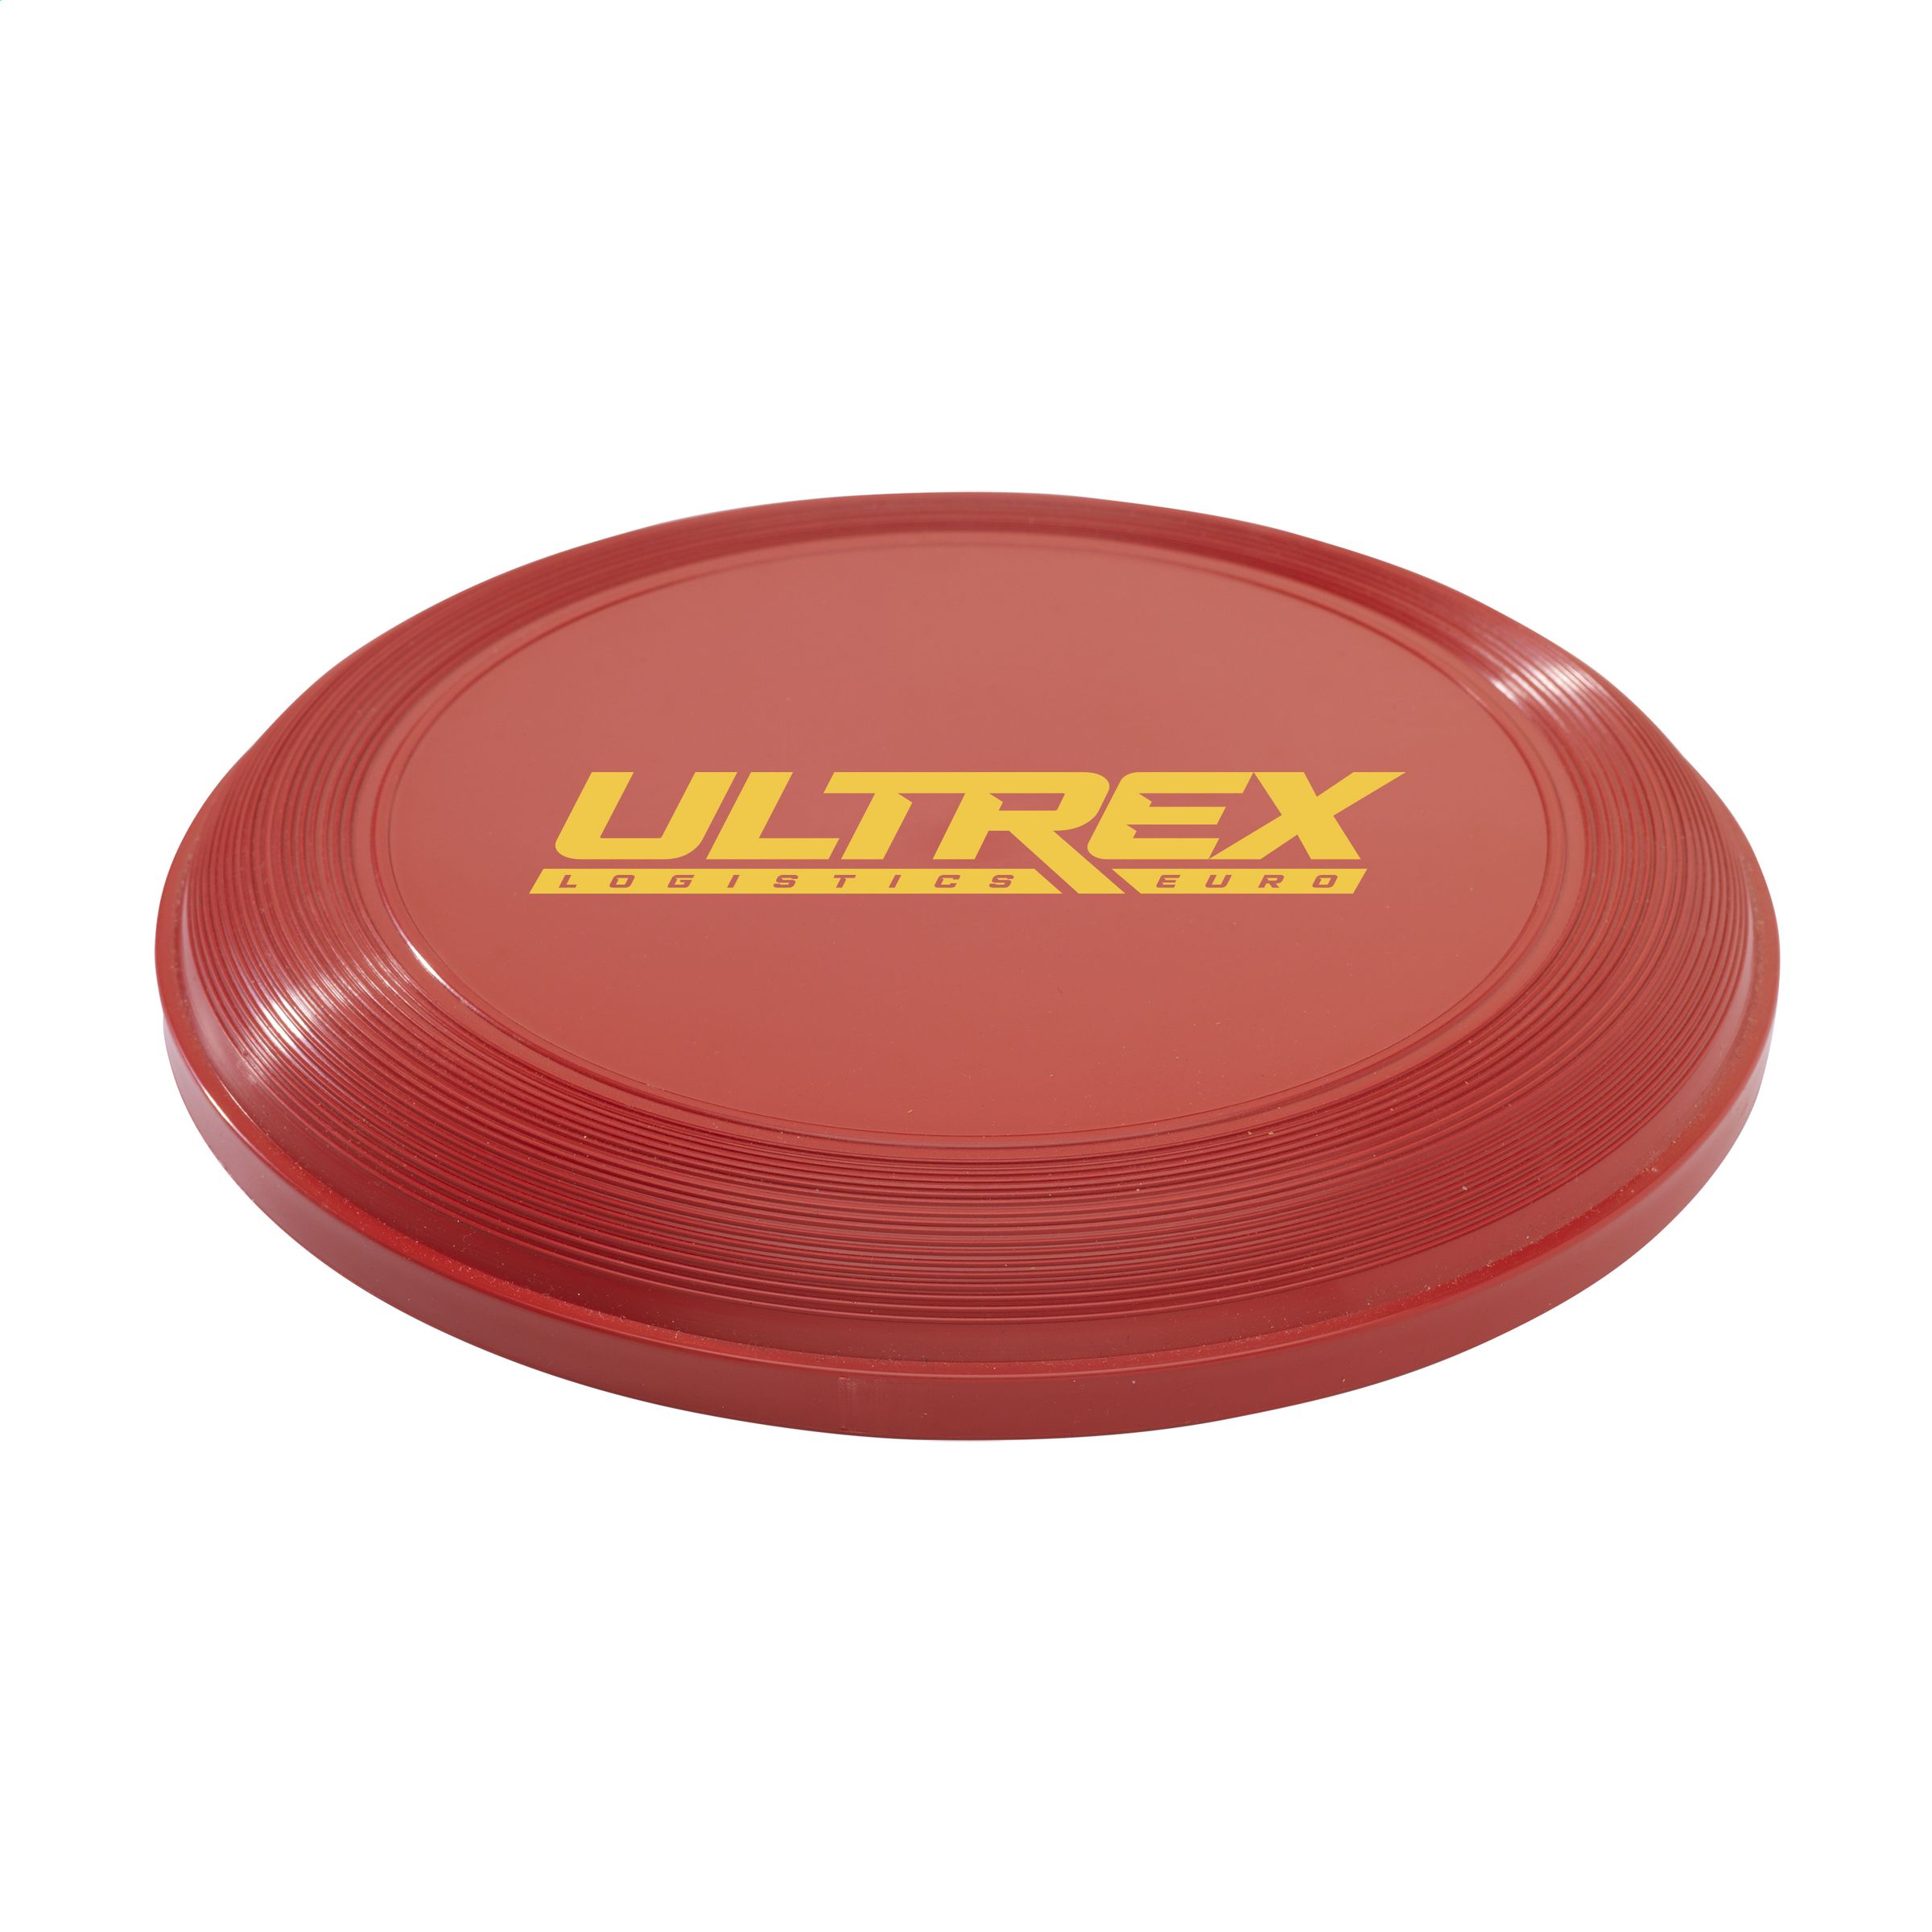 177860 – frisbee